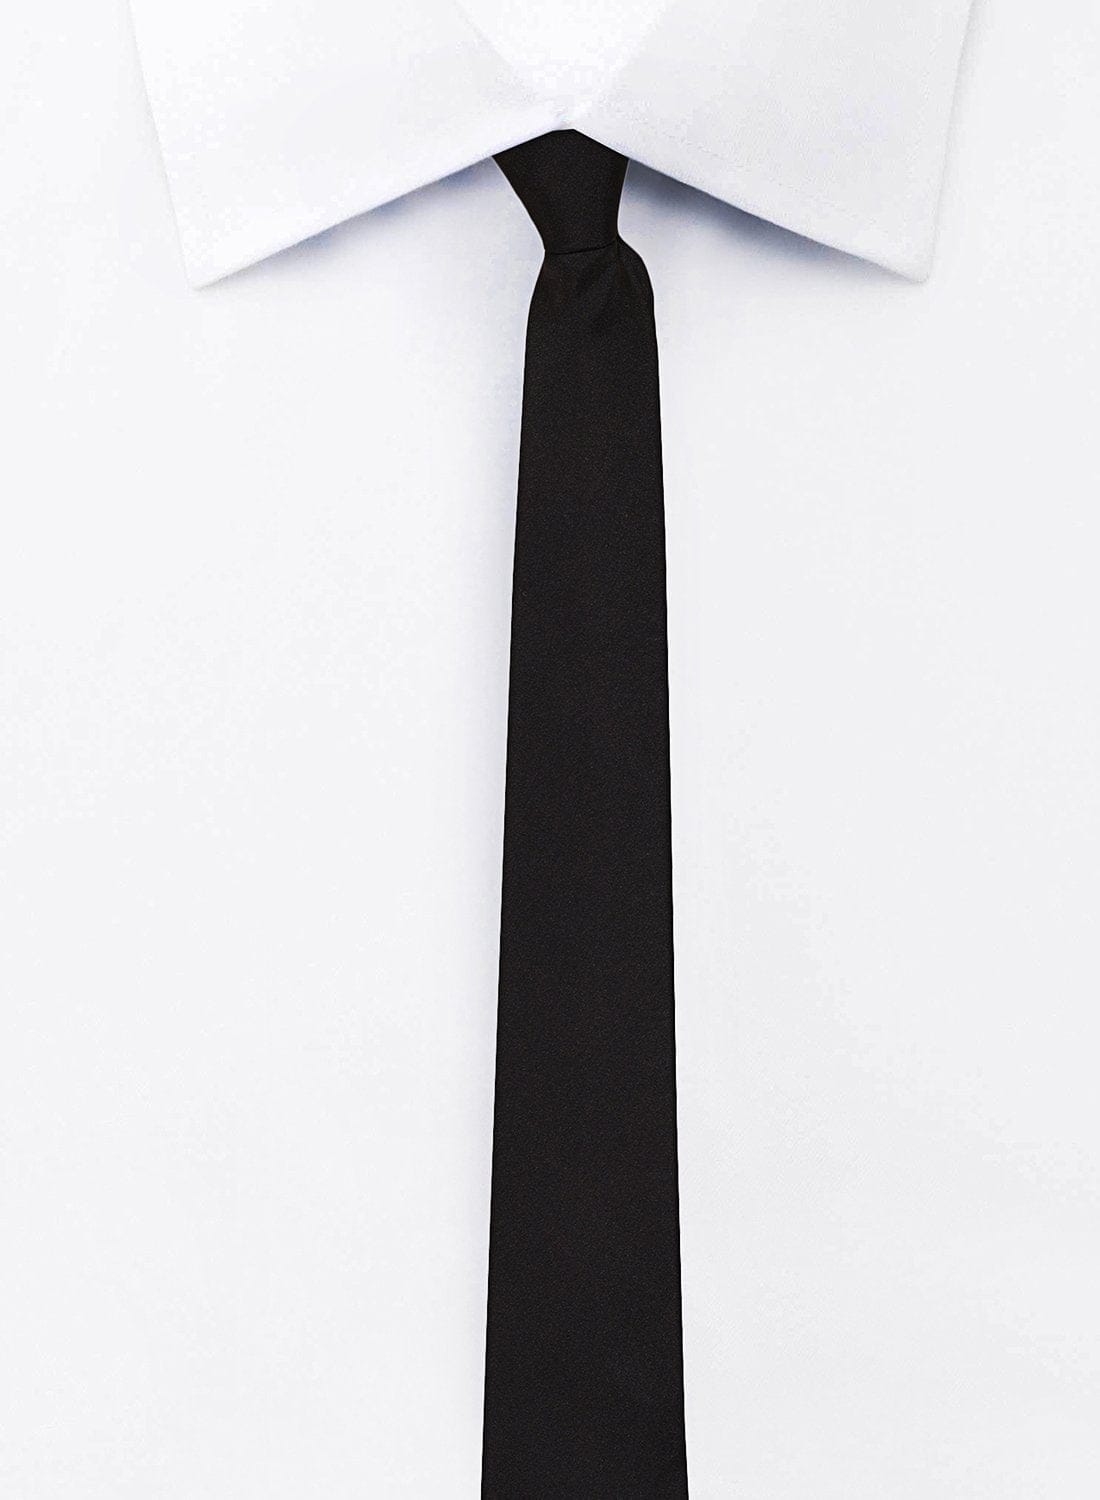 Chokore Black Color Silk Tie for Men